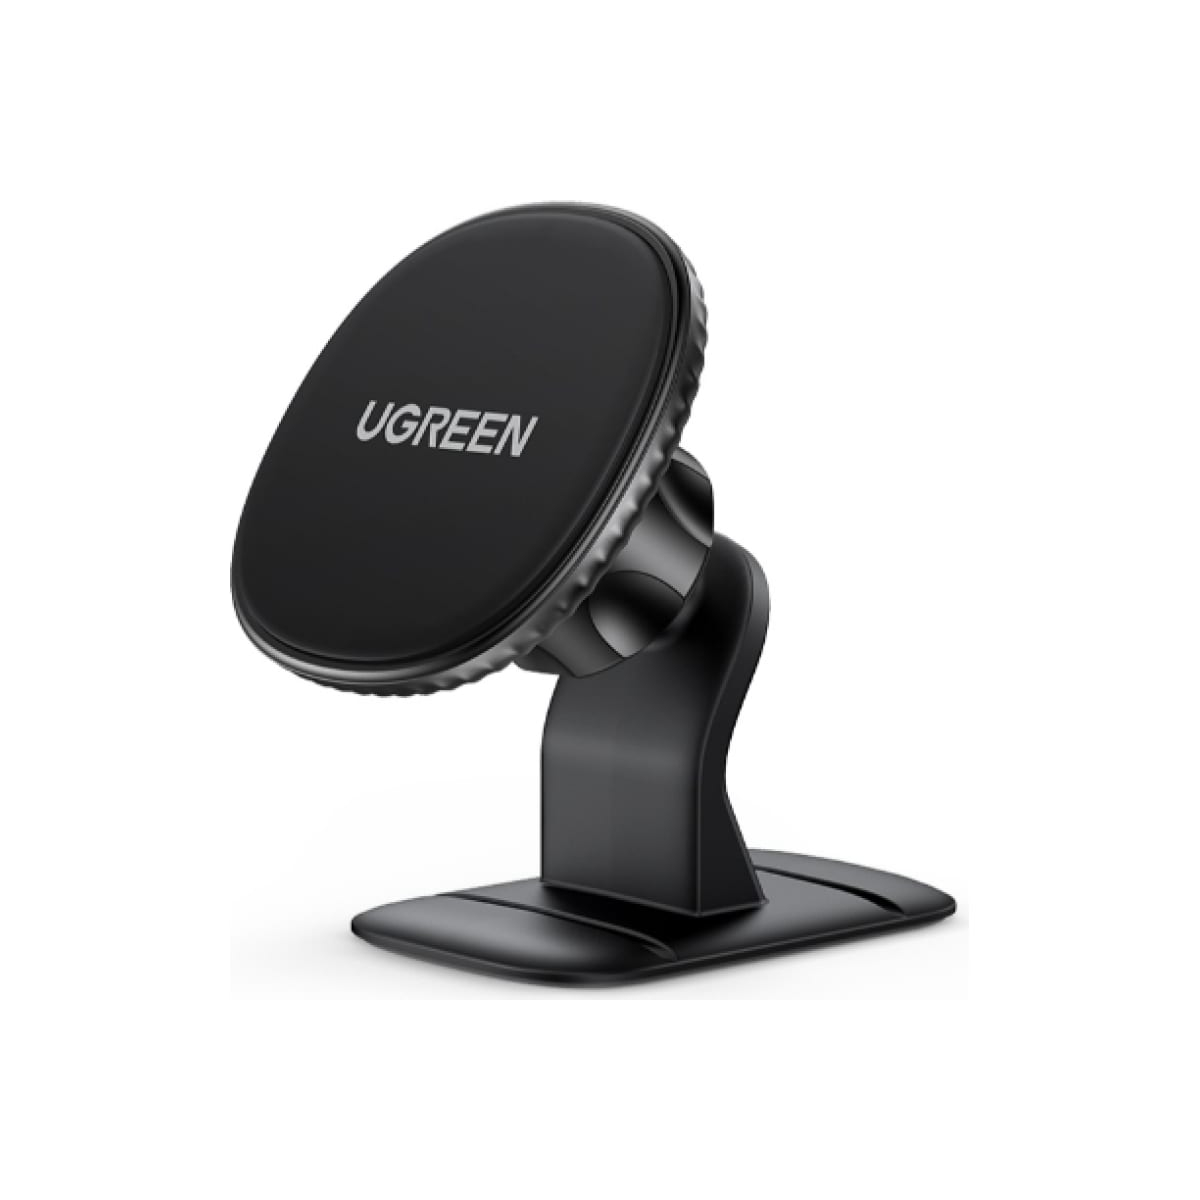 Автомобильный держатель для телефона UGREEN на панель, черный (80785) держатель для телефона ugreen настенный 30394